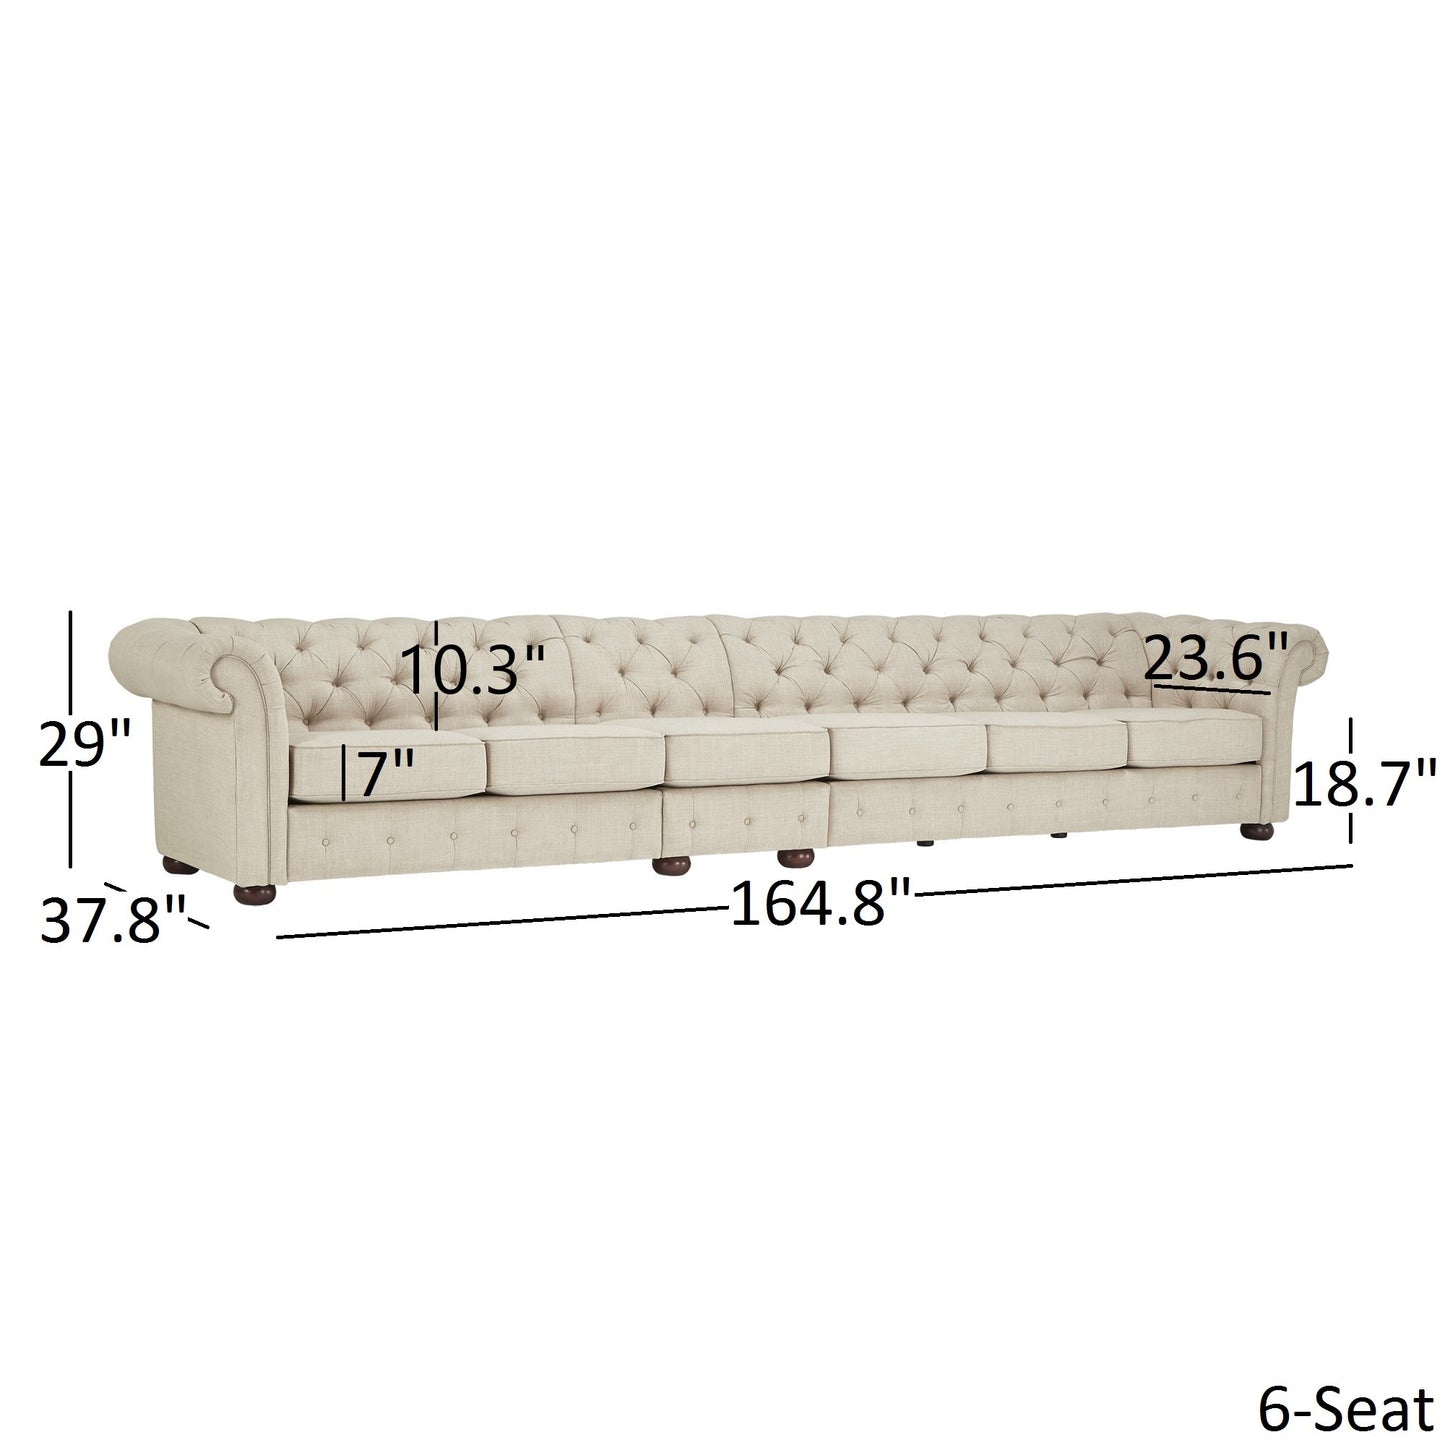 6-Seat Modular Chesterfield Sofa - Beige Linen